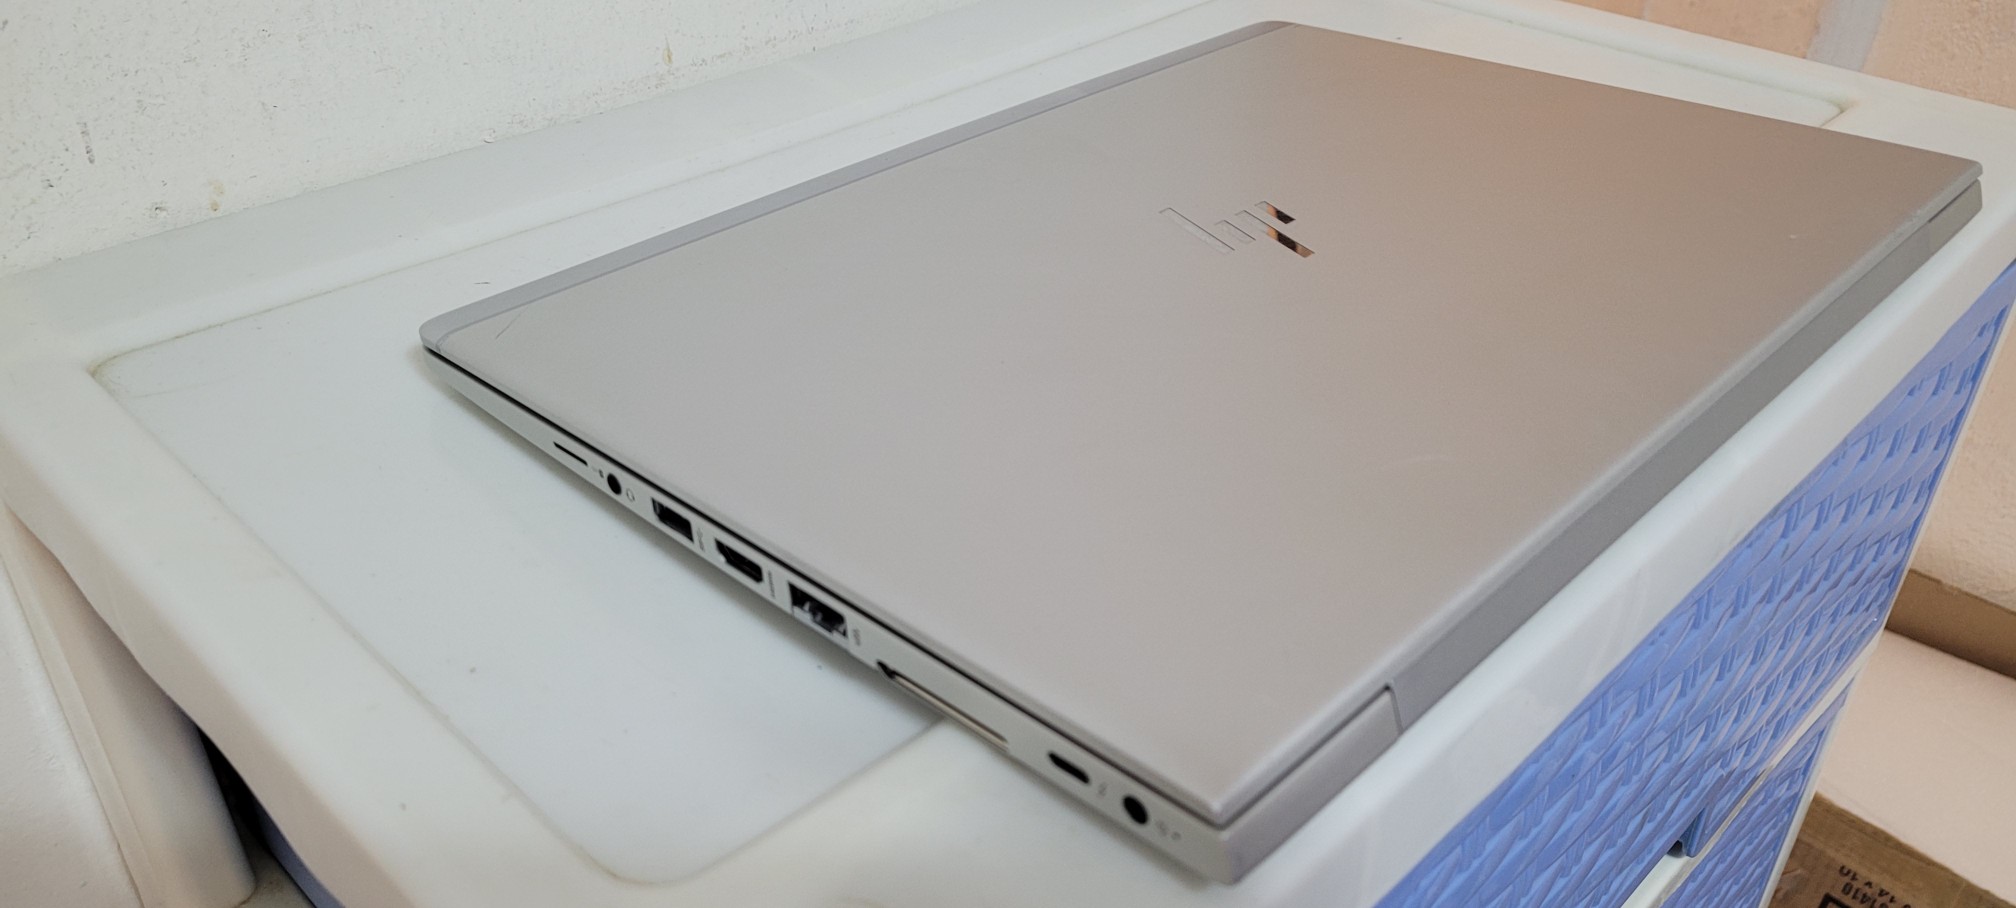 computadoras y laptops - Laptop hp G3 14 Pulg Core i5 7ma Gen Ram 8gb ddr4 Disco 256gb Wifi Bluetoth 2